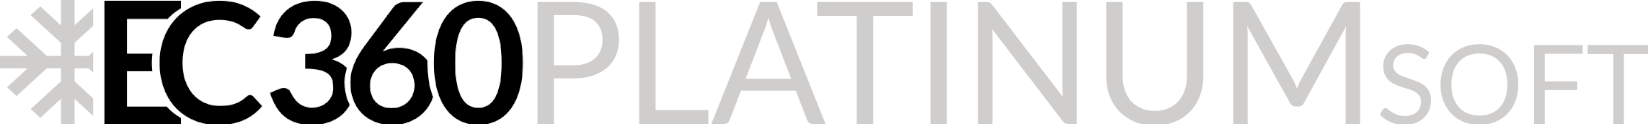 EC360® PLATINUM SOFT Logo